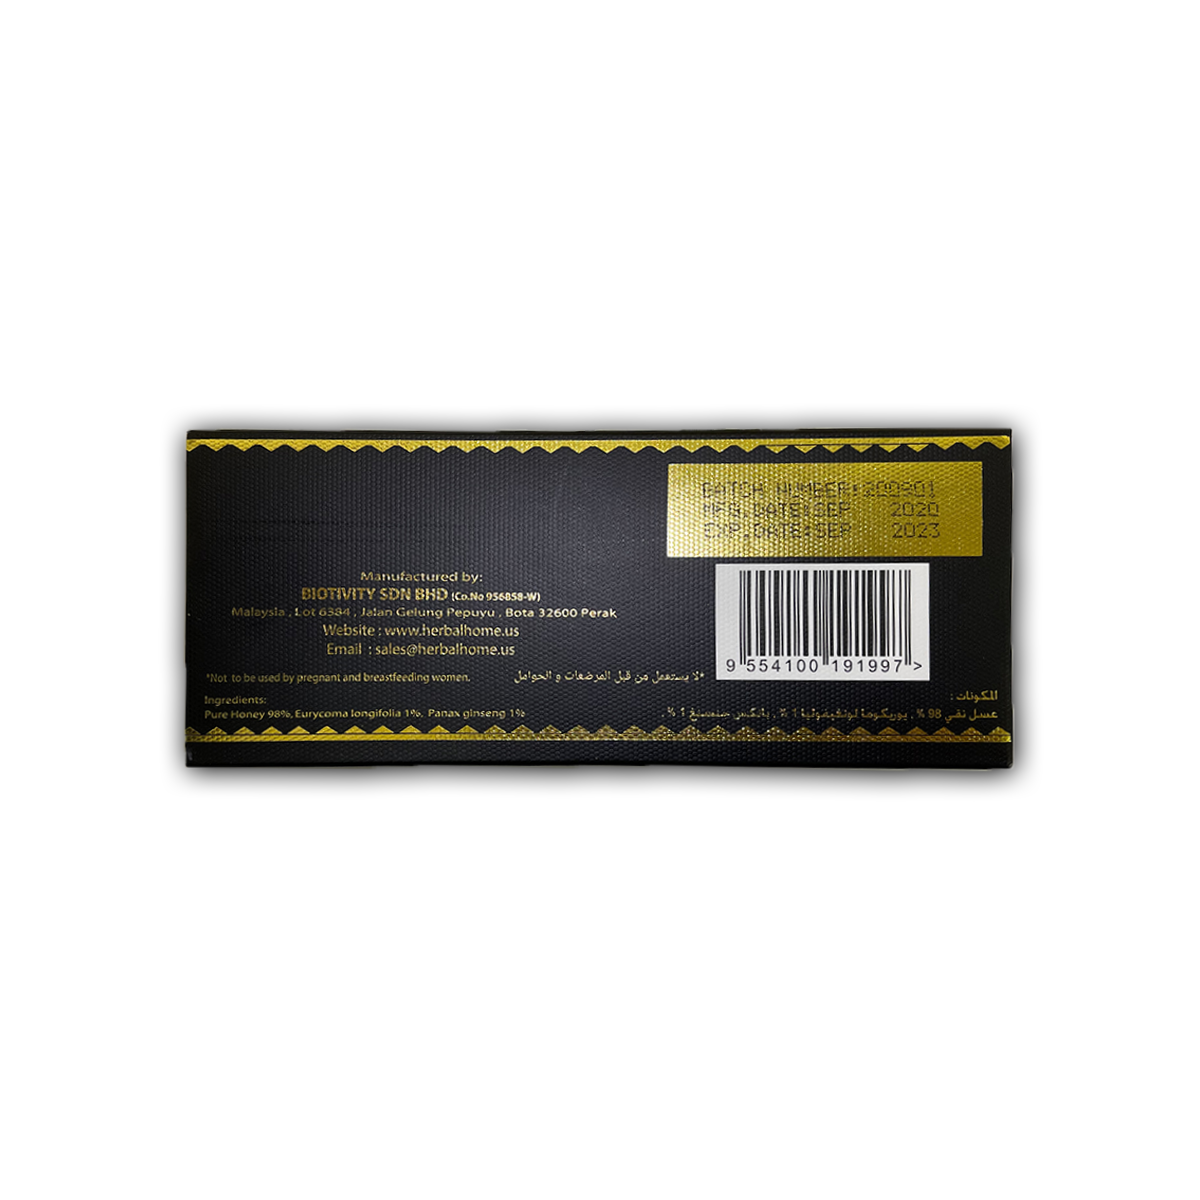 ロイヤルハニーVIP〔12袋×5個入り〕 | ロイヤルハニー公式販売代理店 リッチなハチミツ商店